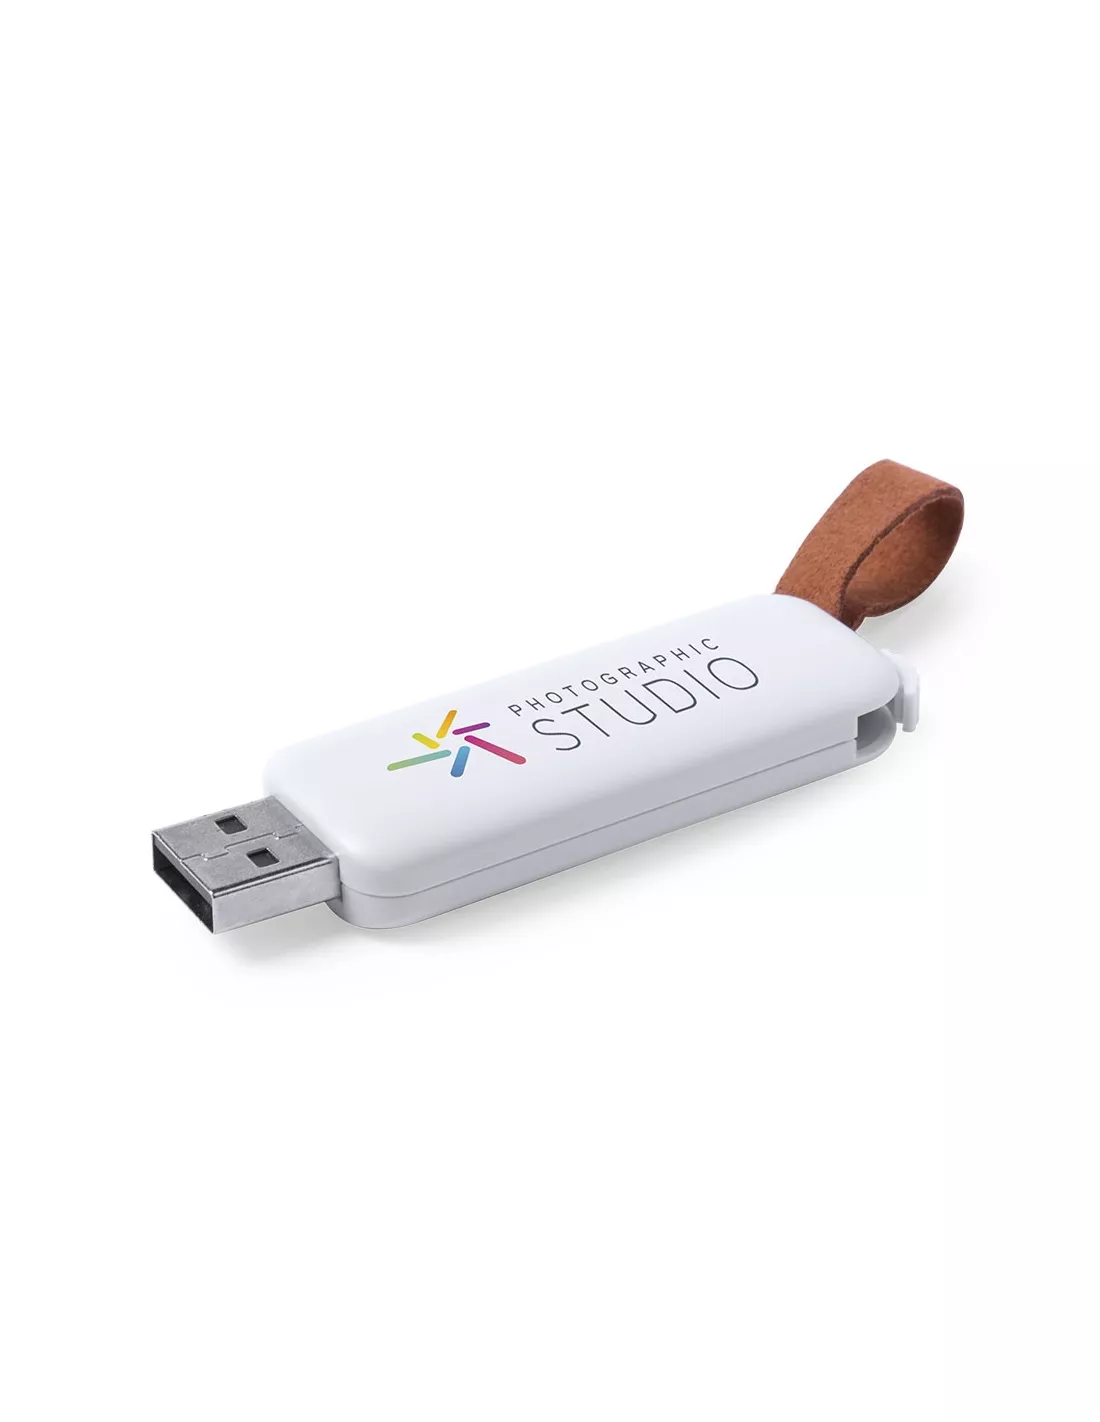 Pendrive USB con cinta de cuero Zilak 16Gb para personalizar